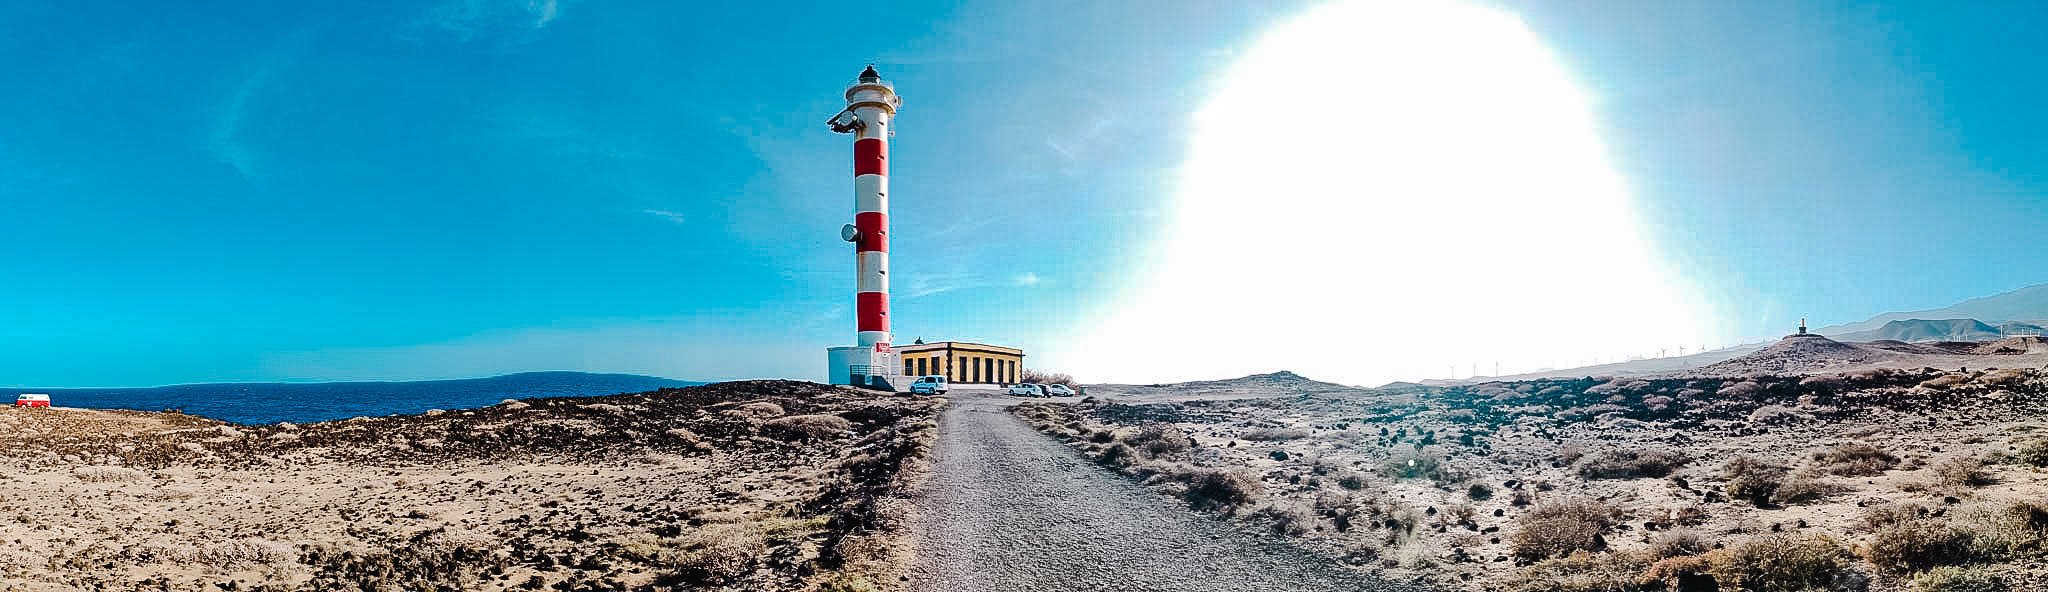 gegenwind-tenerife-photography-lighthouse-47-2